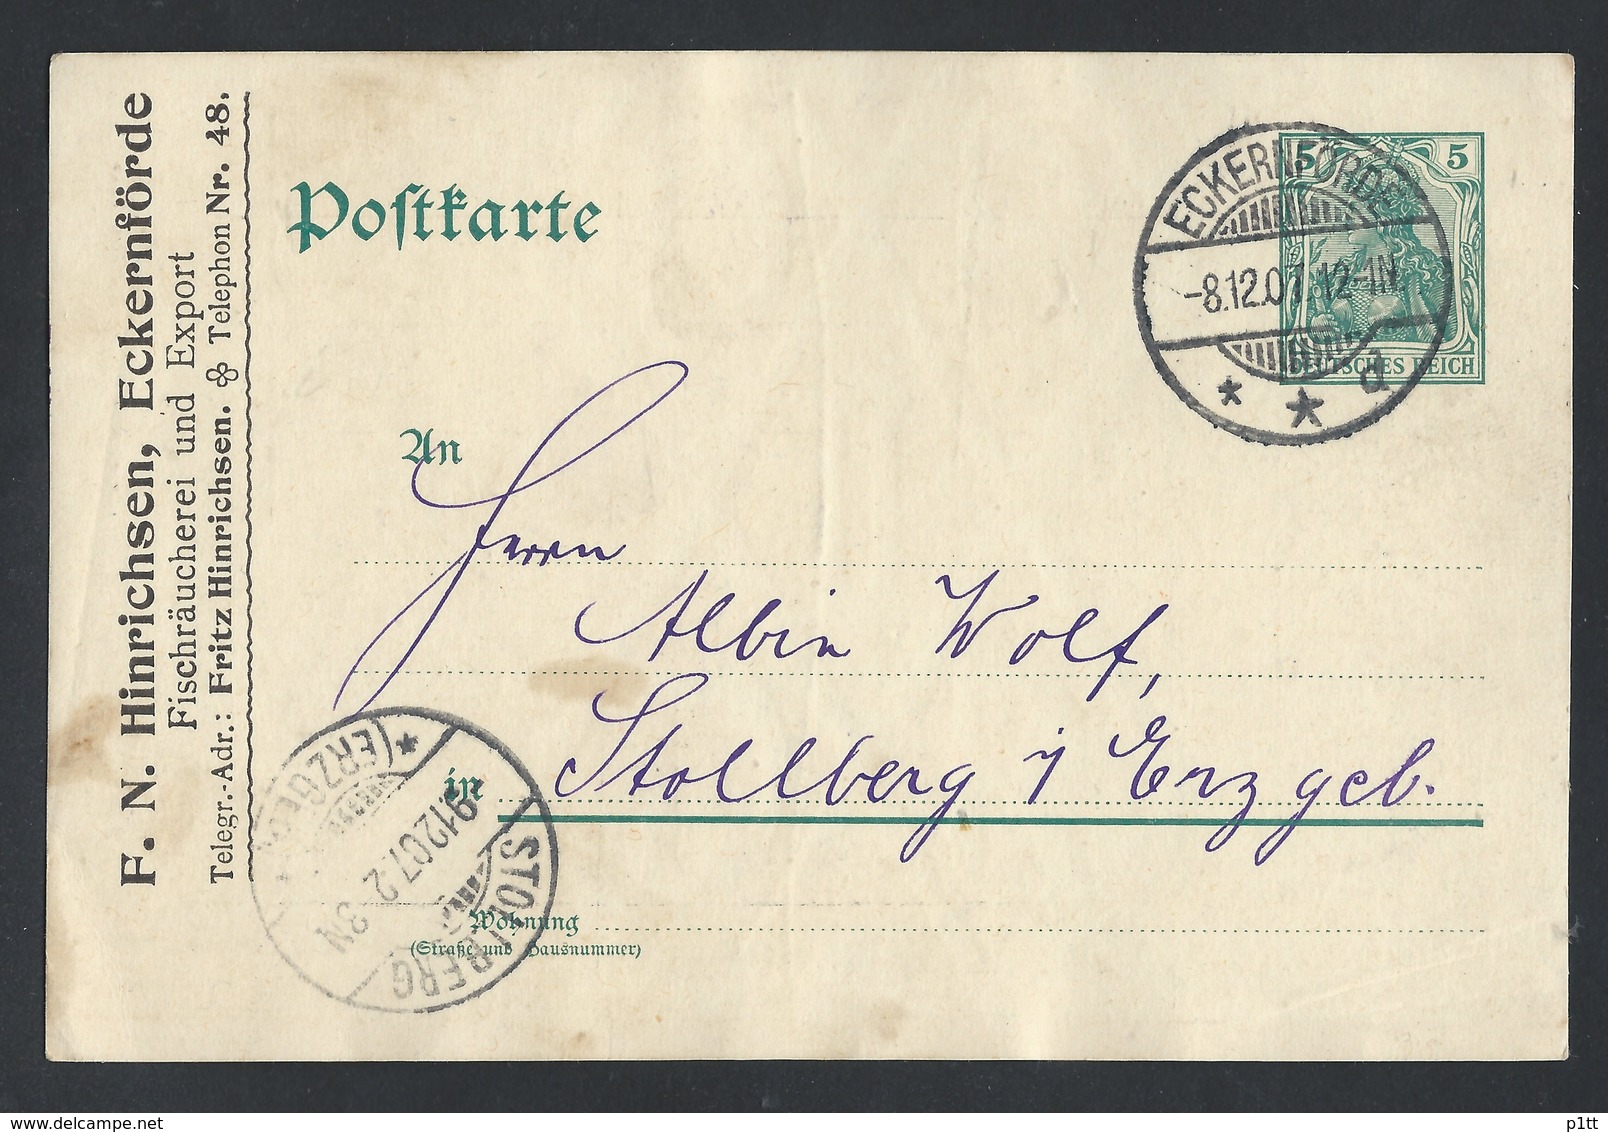 19de.Postkarte. Es Gab Eine Post Im Jahr 1907 Eckernforde  Stollberg. Deutsches Reich. Rechnung - Lettres & Documents